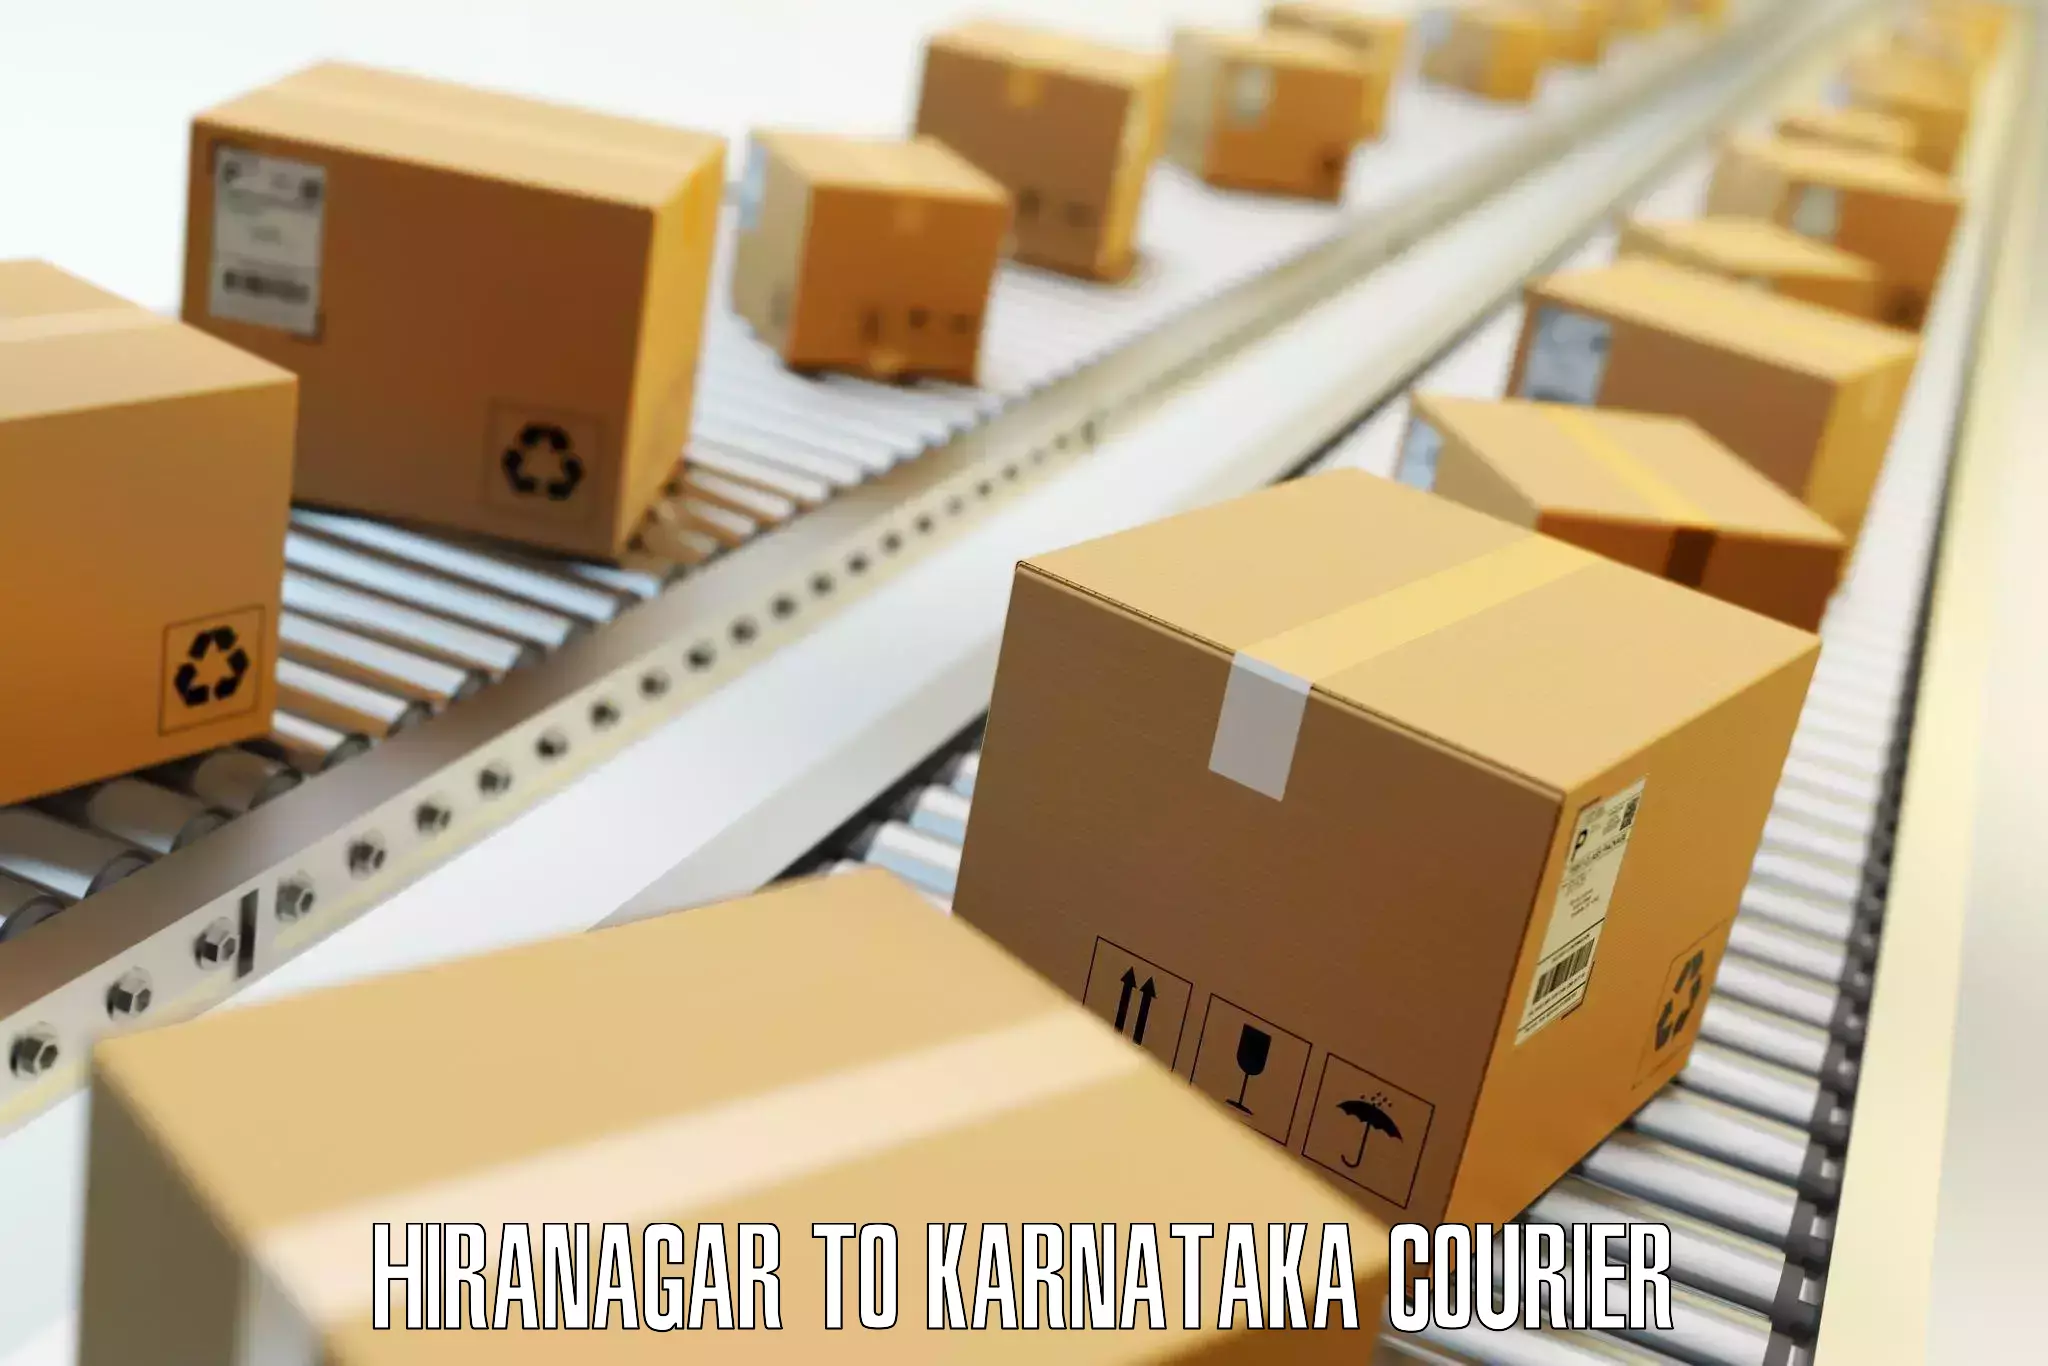 Baggage transport professionals Hiranagar to Karnataka